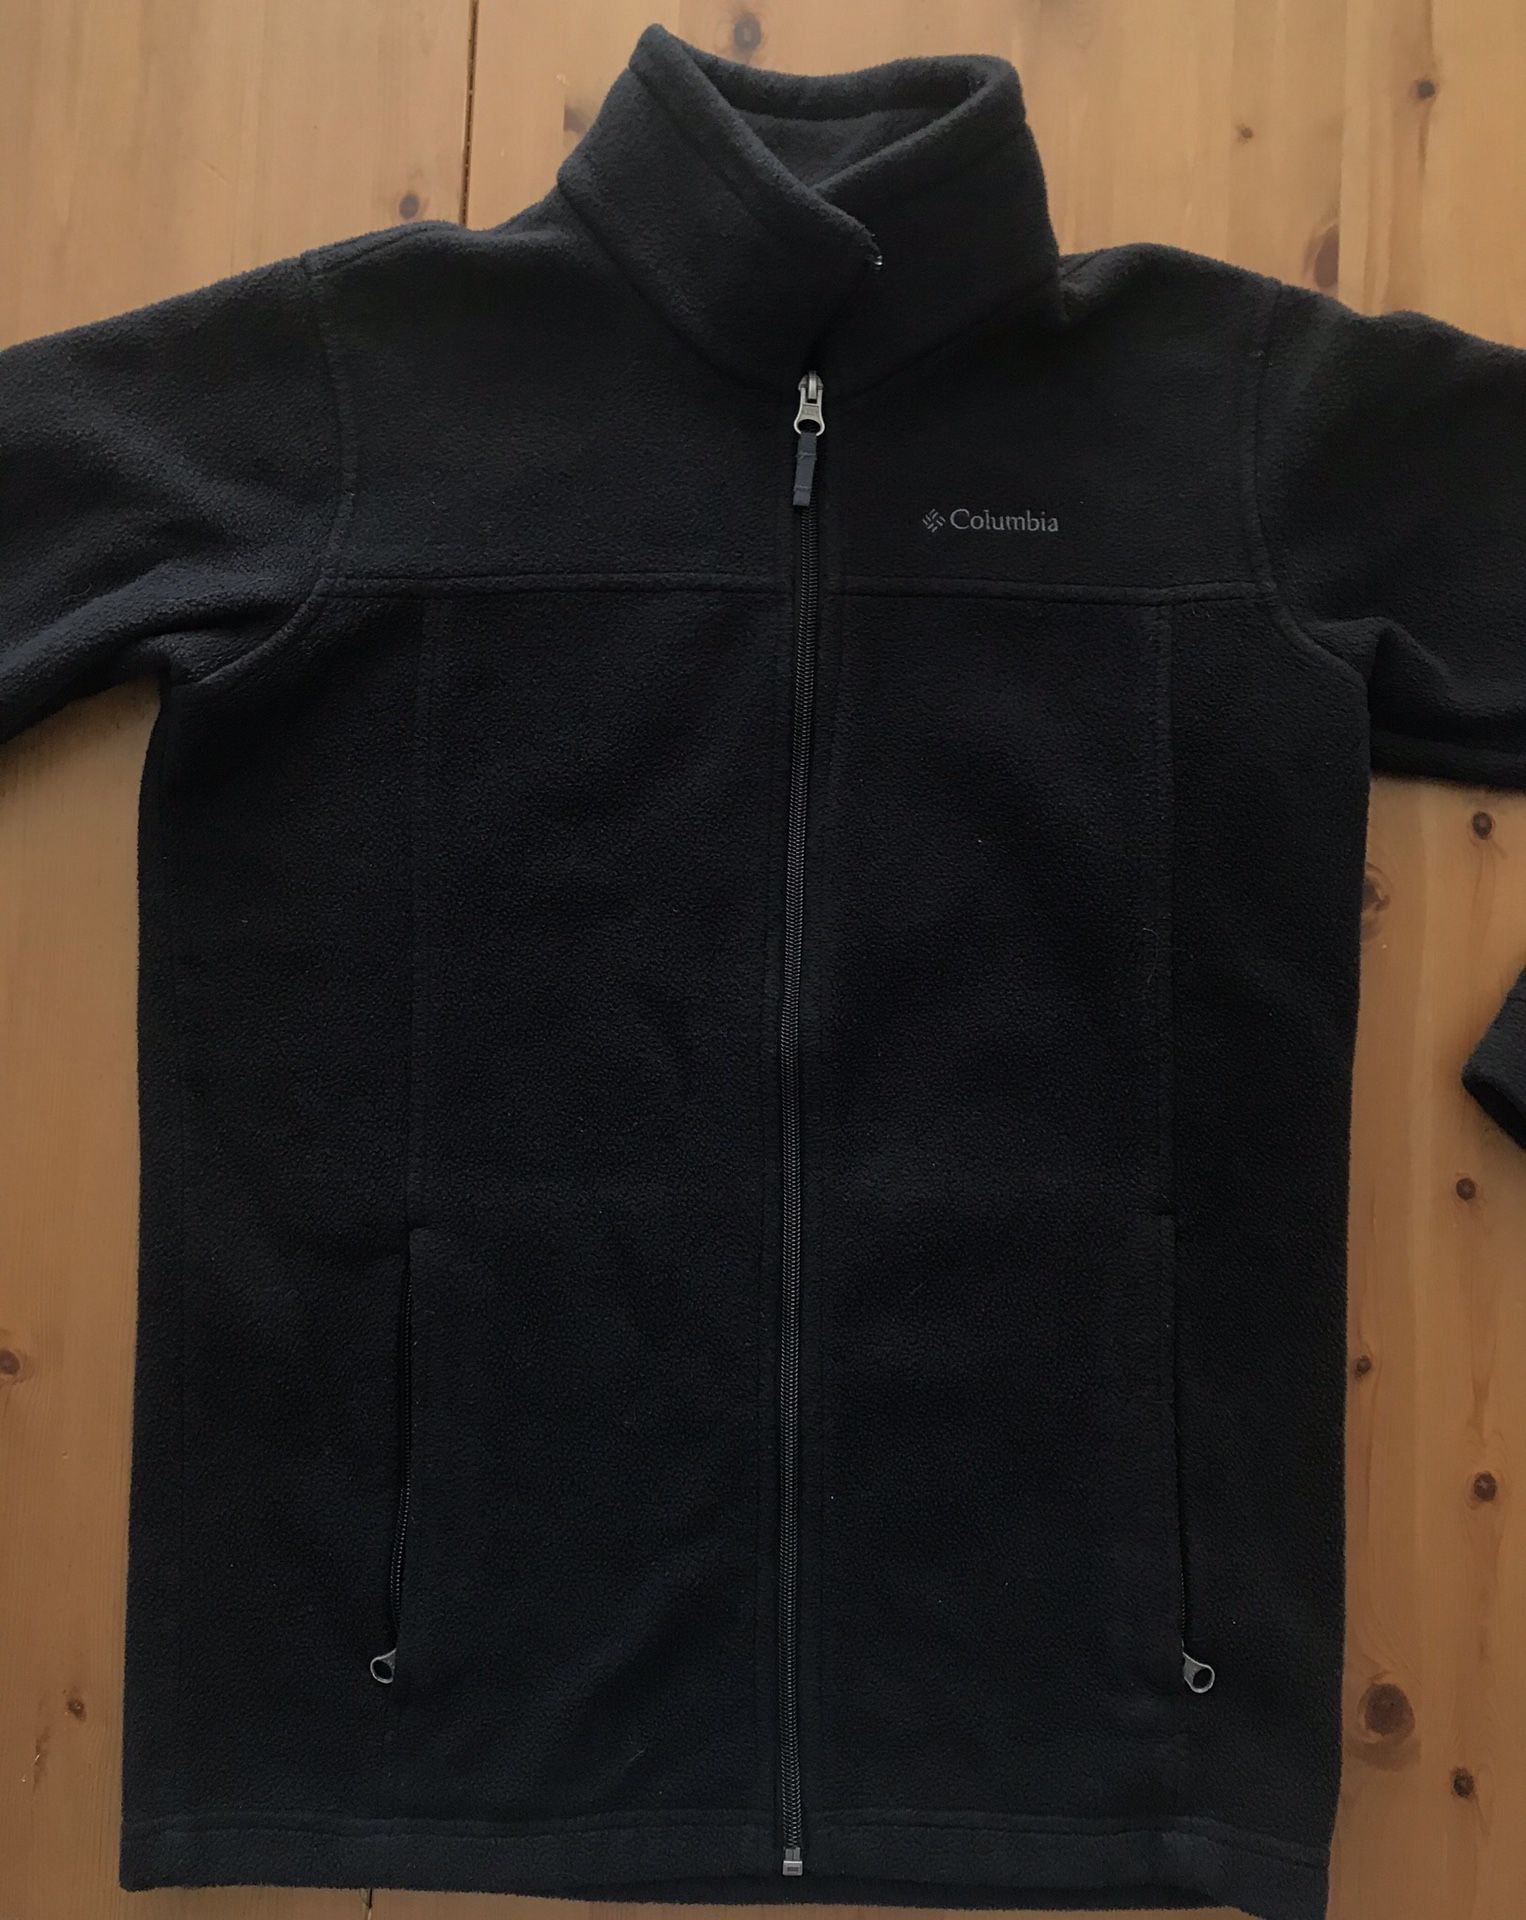 Columbia Black Fleece Jacket Youth Size 14-16